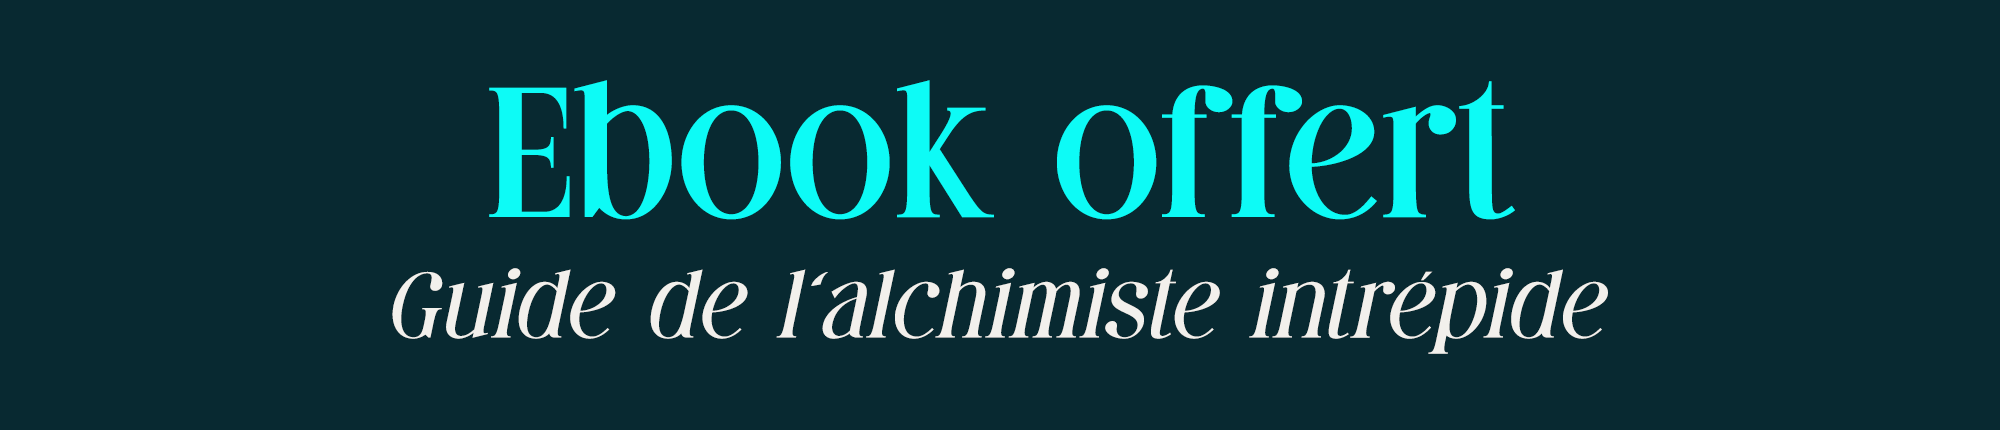 Ebook offert - Guide de l'alchimiste intrépide